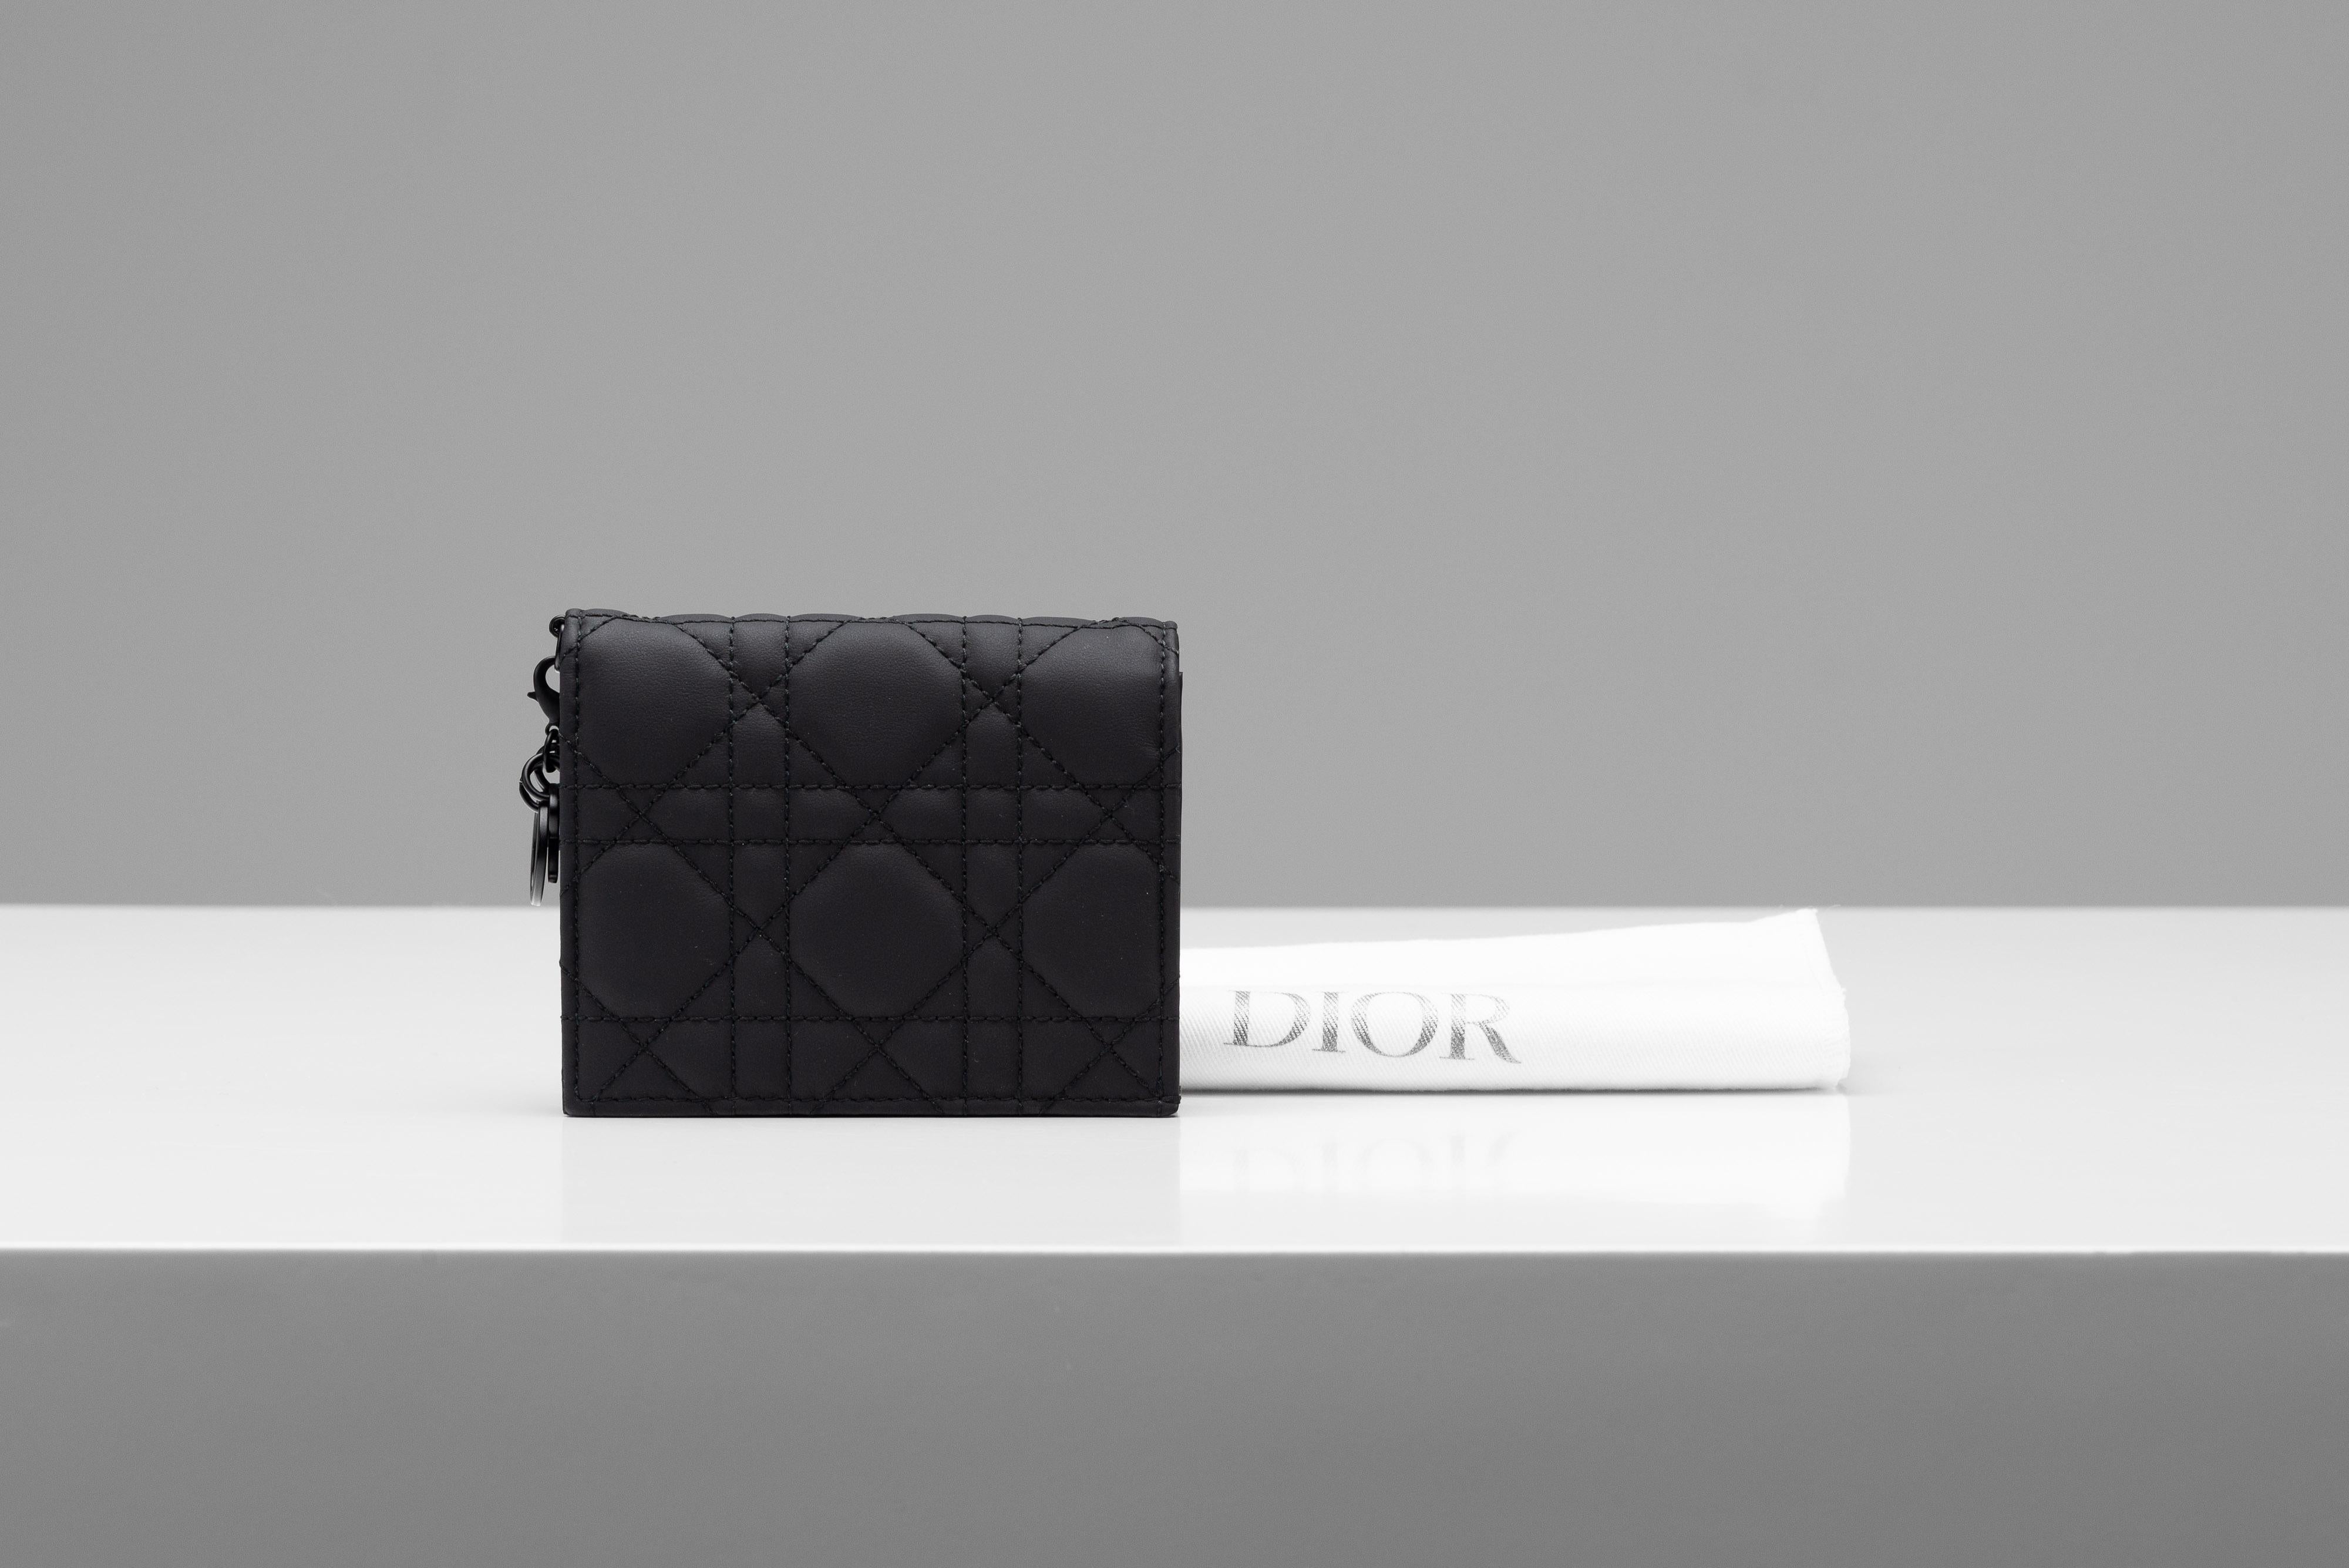 Aus der Kollektion von SAVINETI bieten wir dieses Portemonnaie von Lady Dior an:

- Marke: Dior 
- Modell: Lady Dior Mini Geldbörse
- Farbe: Ultramattes Schwarz
- Jahr: 2023
- Zustand: Neuer Zustand (es lag nur im Schrank)
- MATERIALIEN: